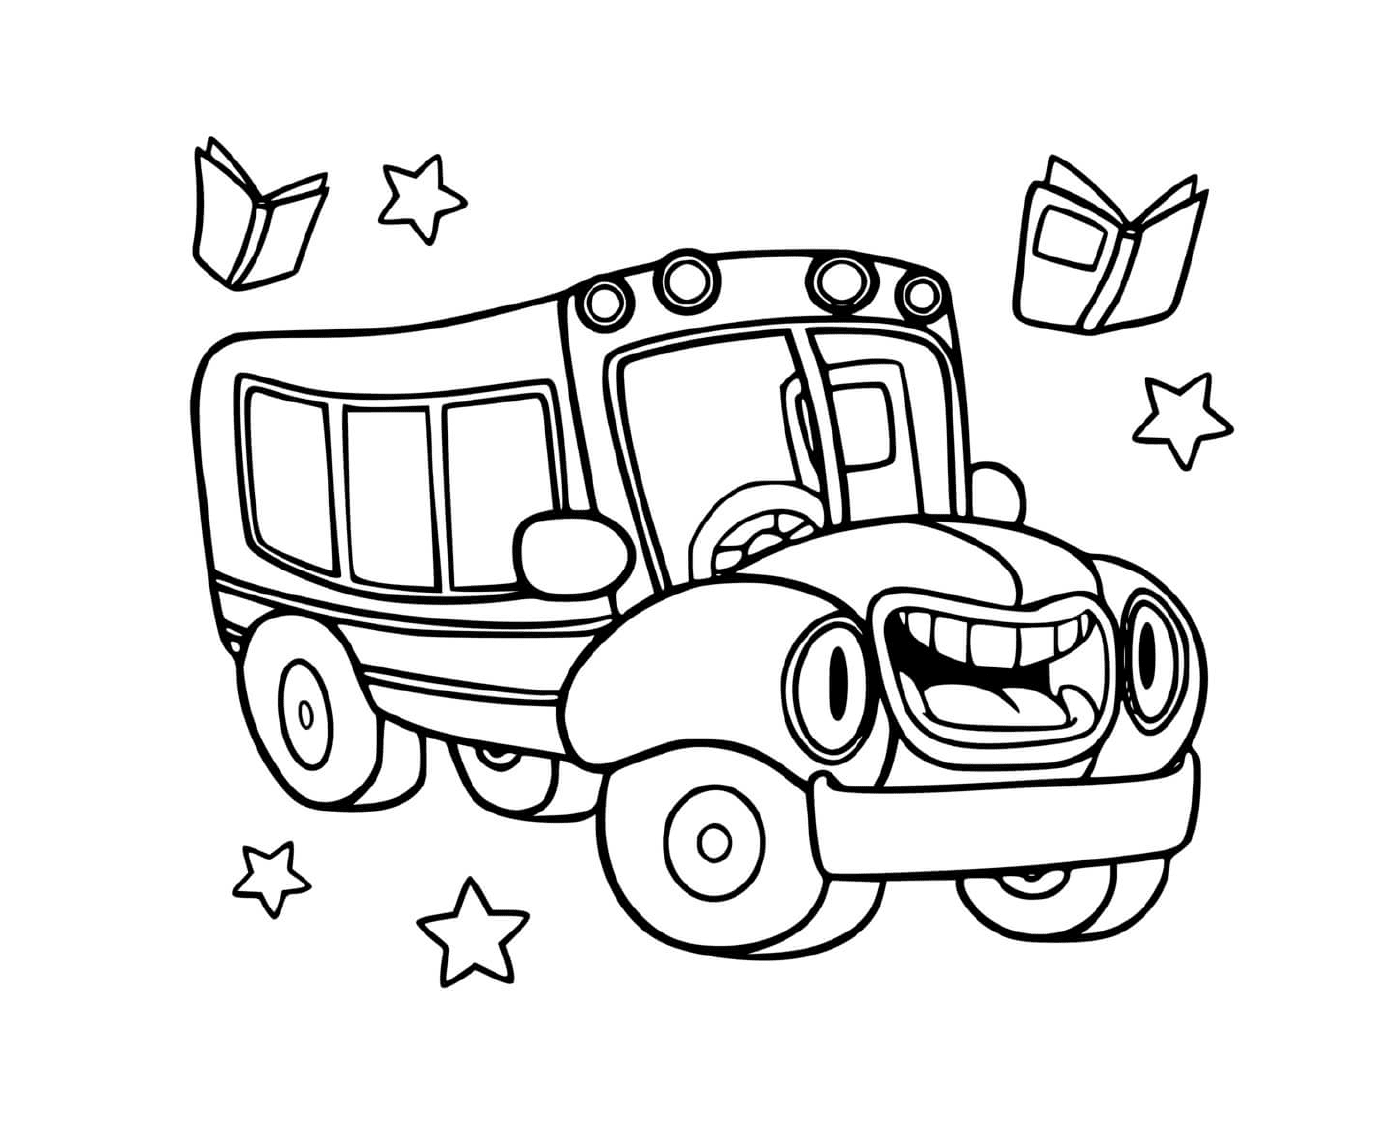  Um ônibus escolar para crianças em idade escolar 